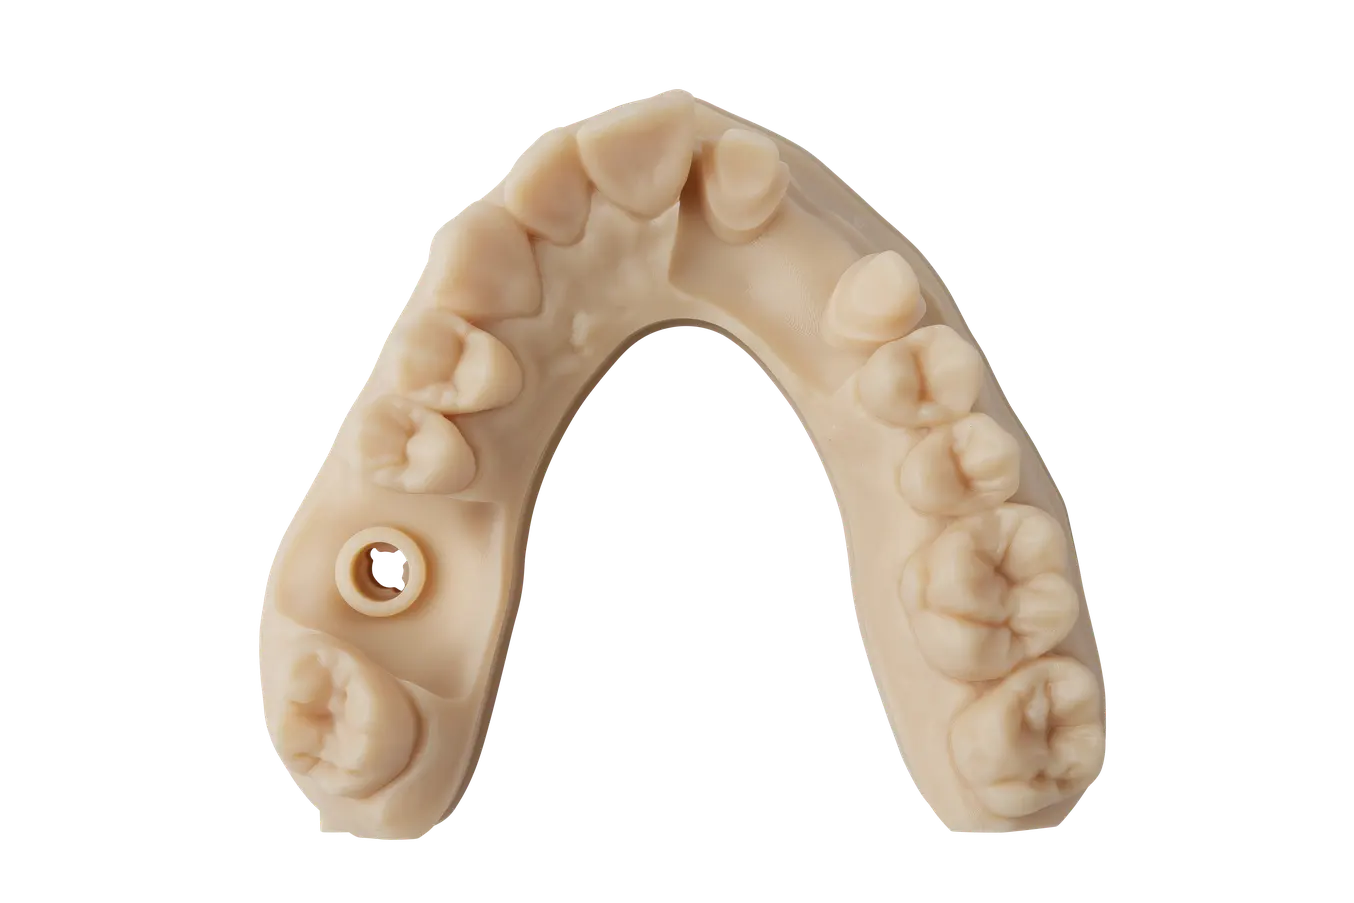 Modèle dentaire imprimé en 3D avec Precision Model Resin